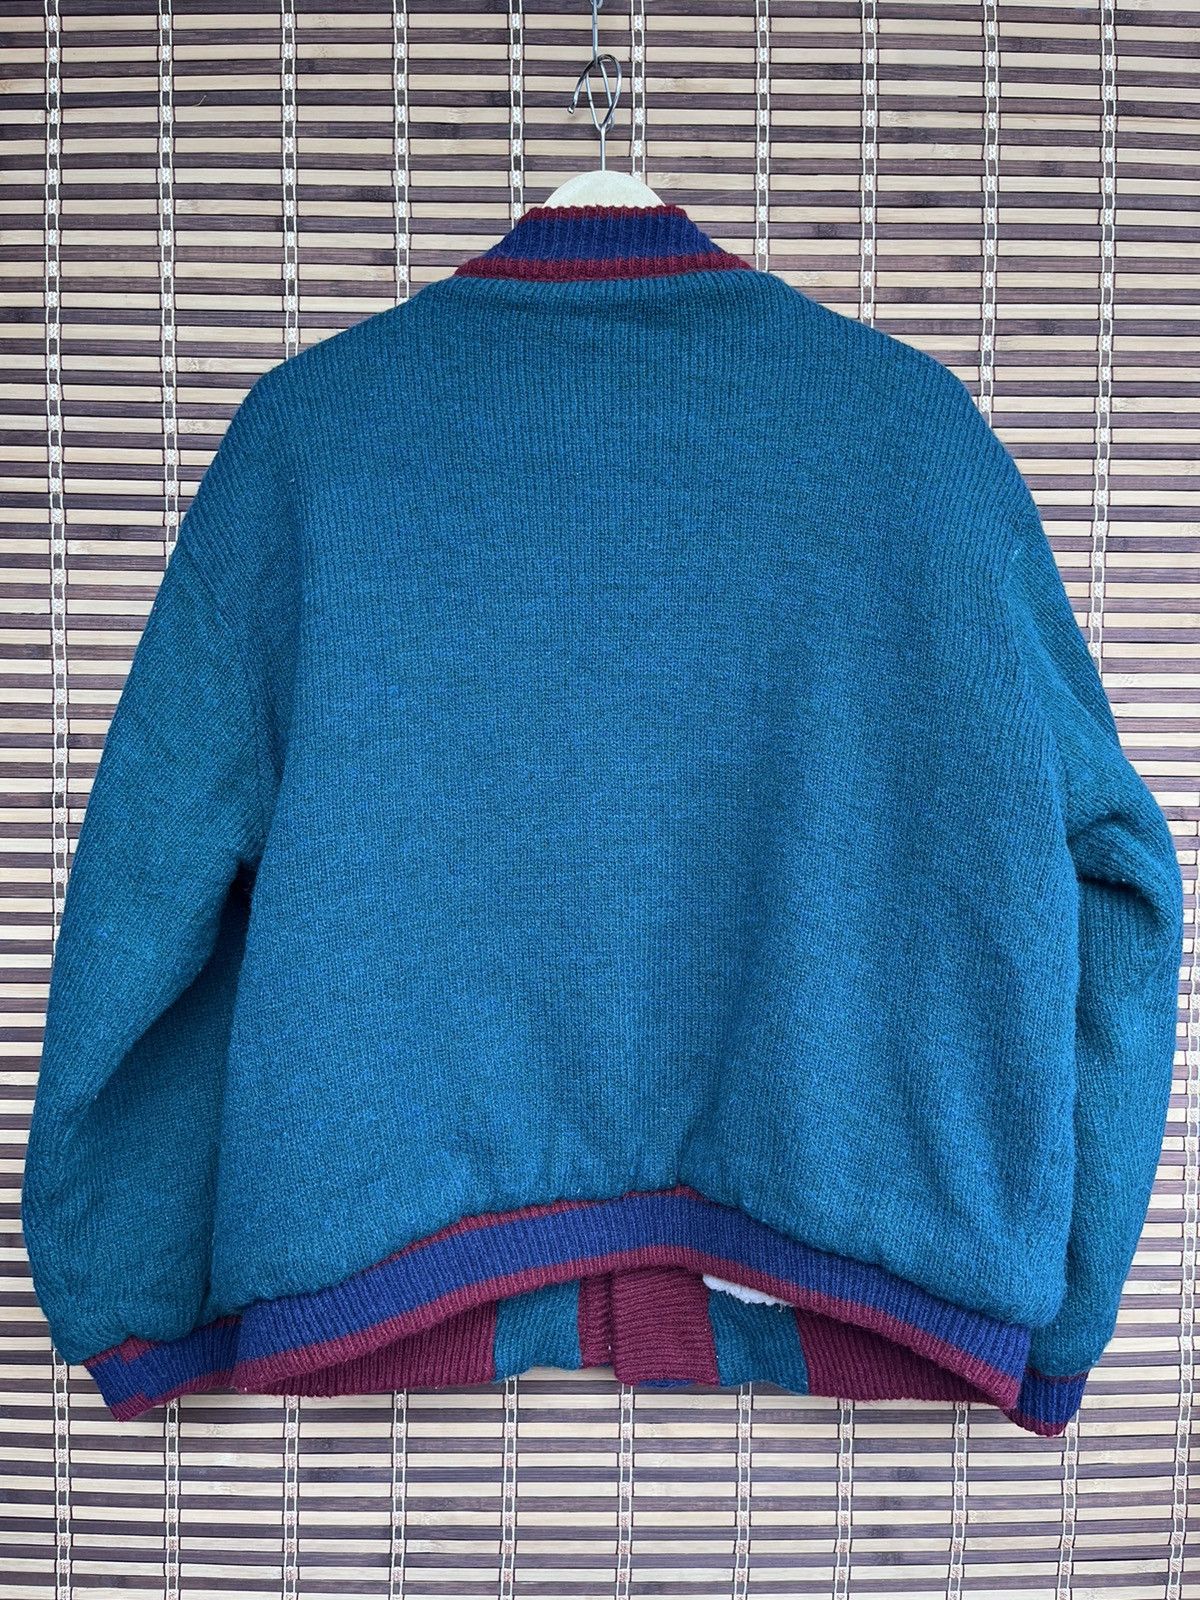 Vintage - Grails Wool Knitwear Sweater American Champ 1957 - 2